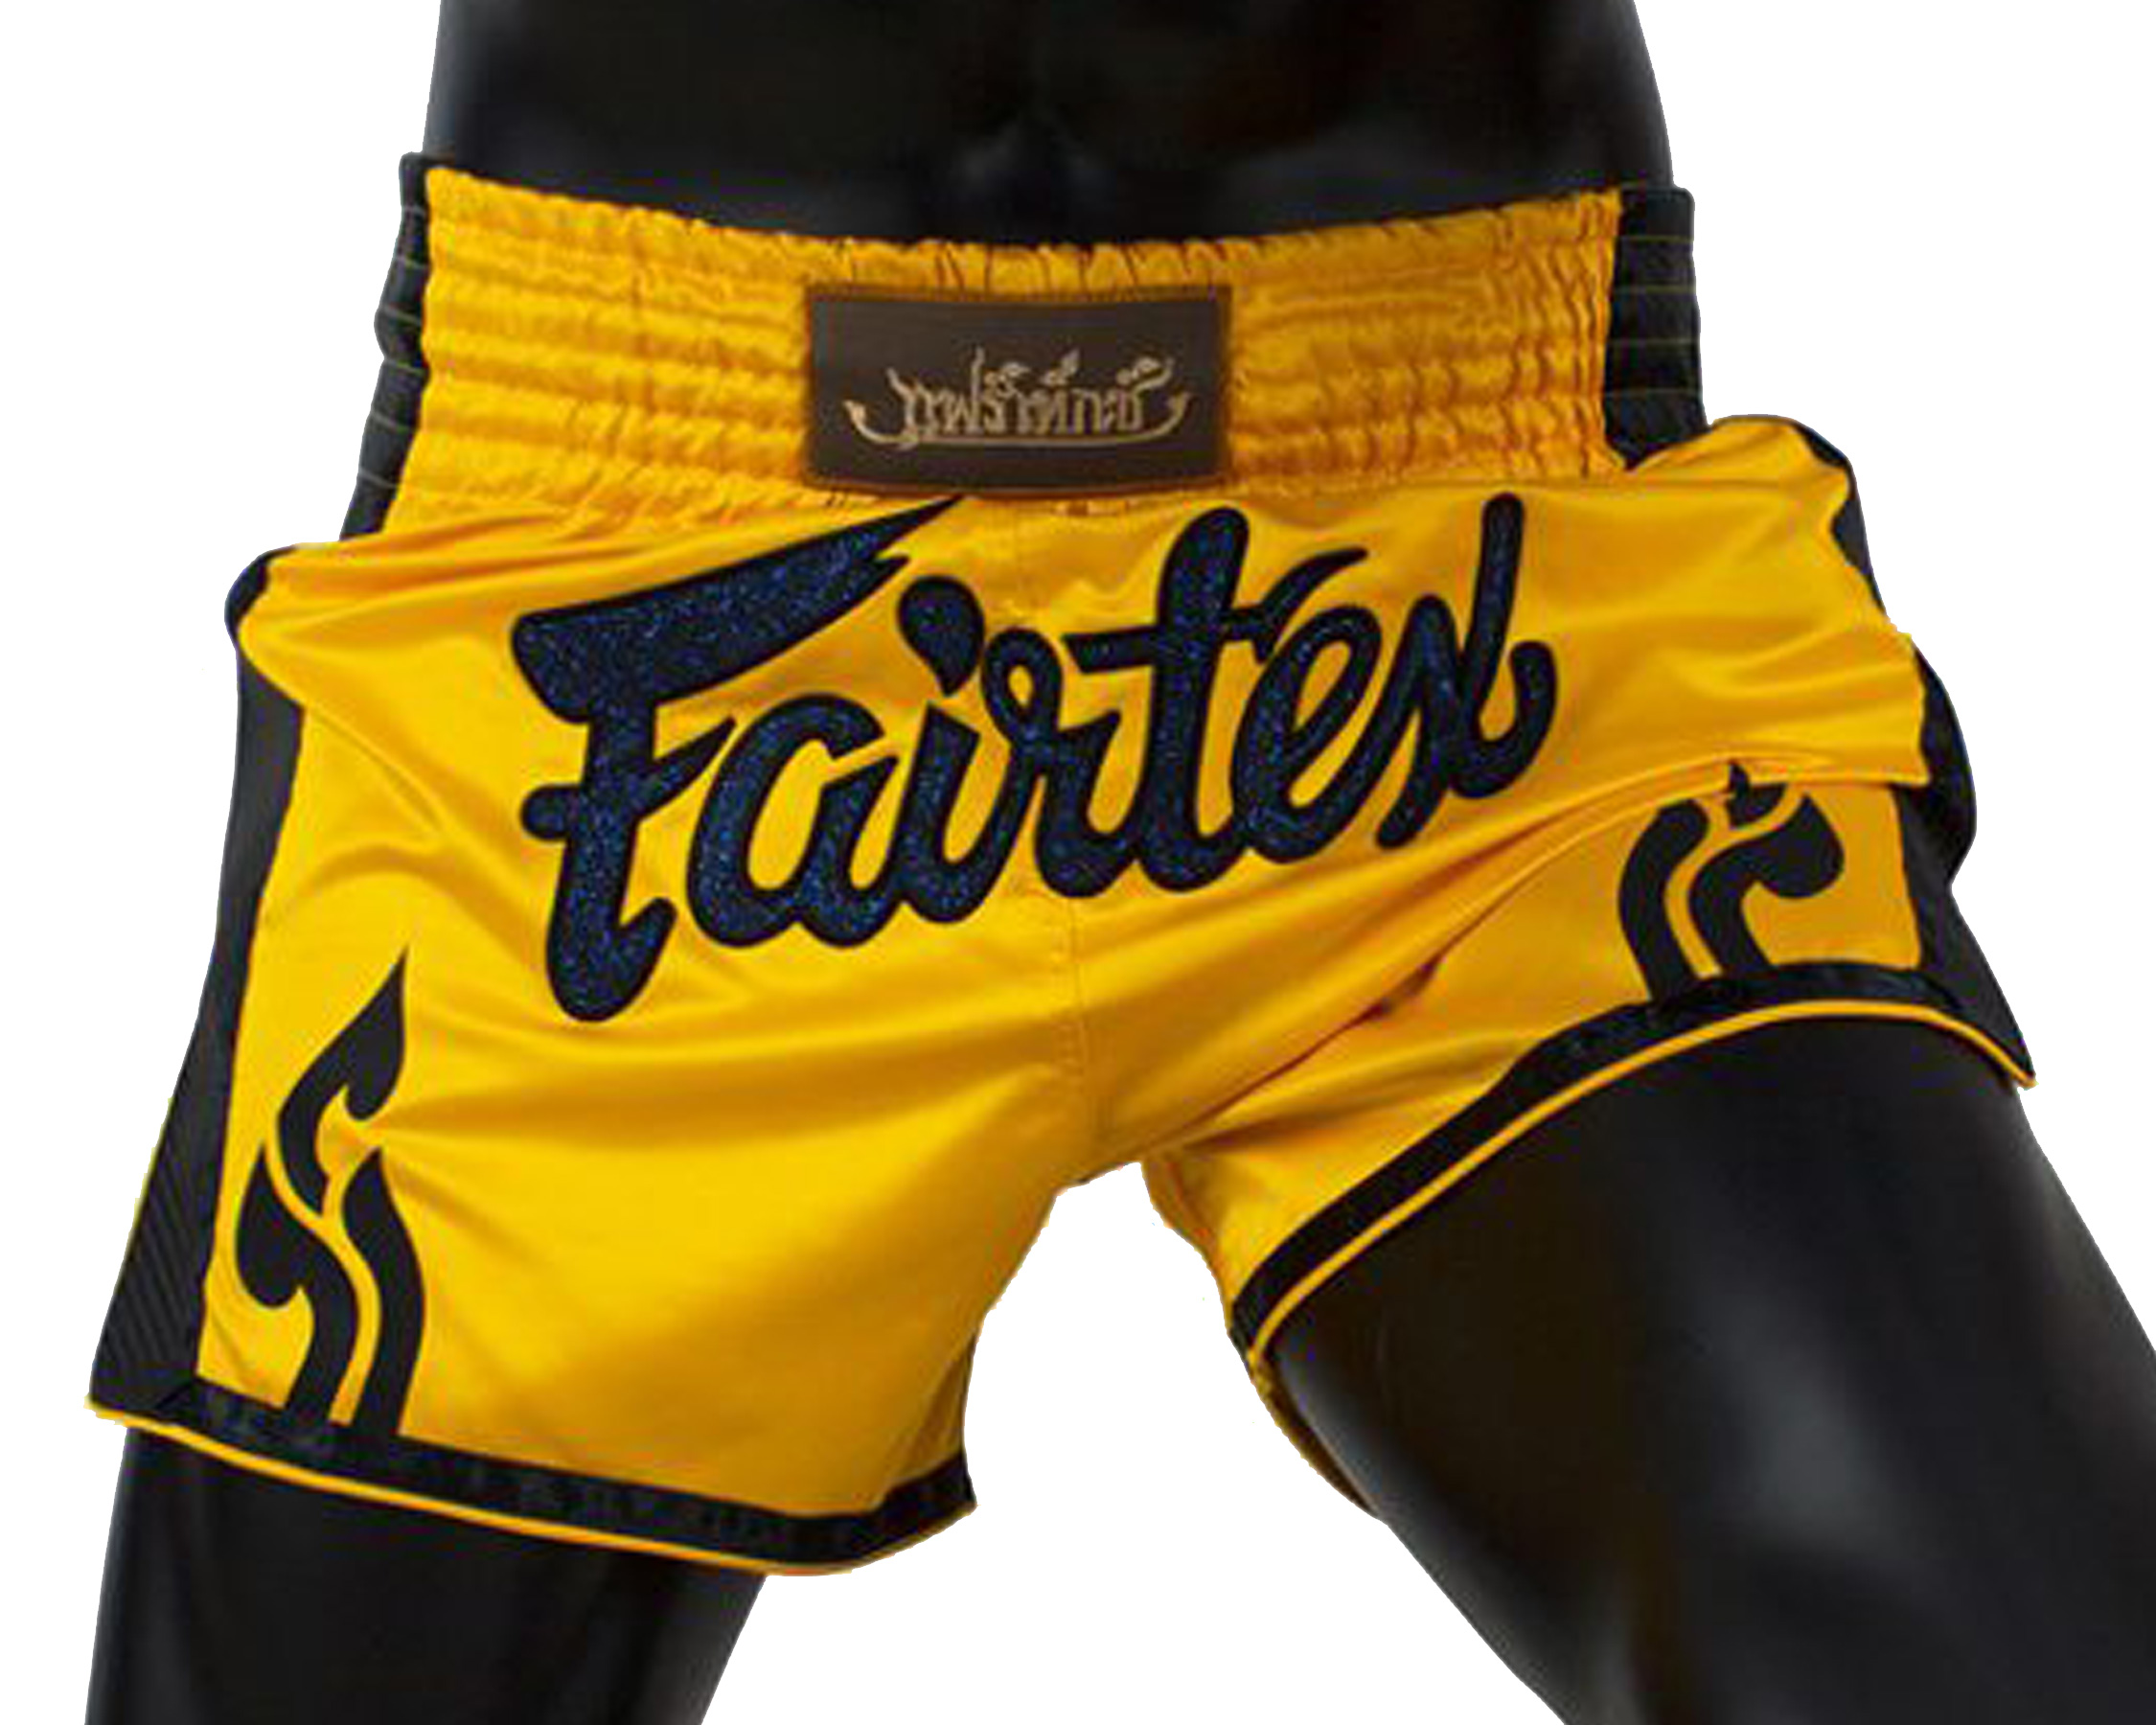 Fairtex BS1701 muay thai shorts Yellow Satin - Boxing trunks and ringwear -  Fairtex, Muay Thai and MMA Shop